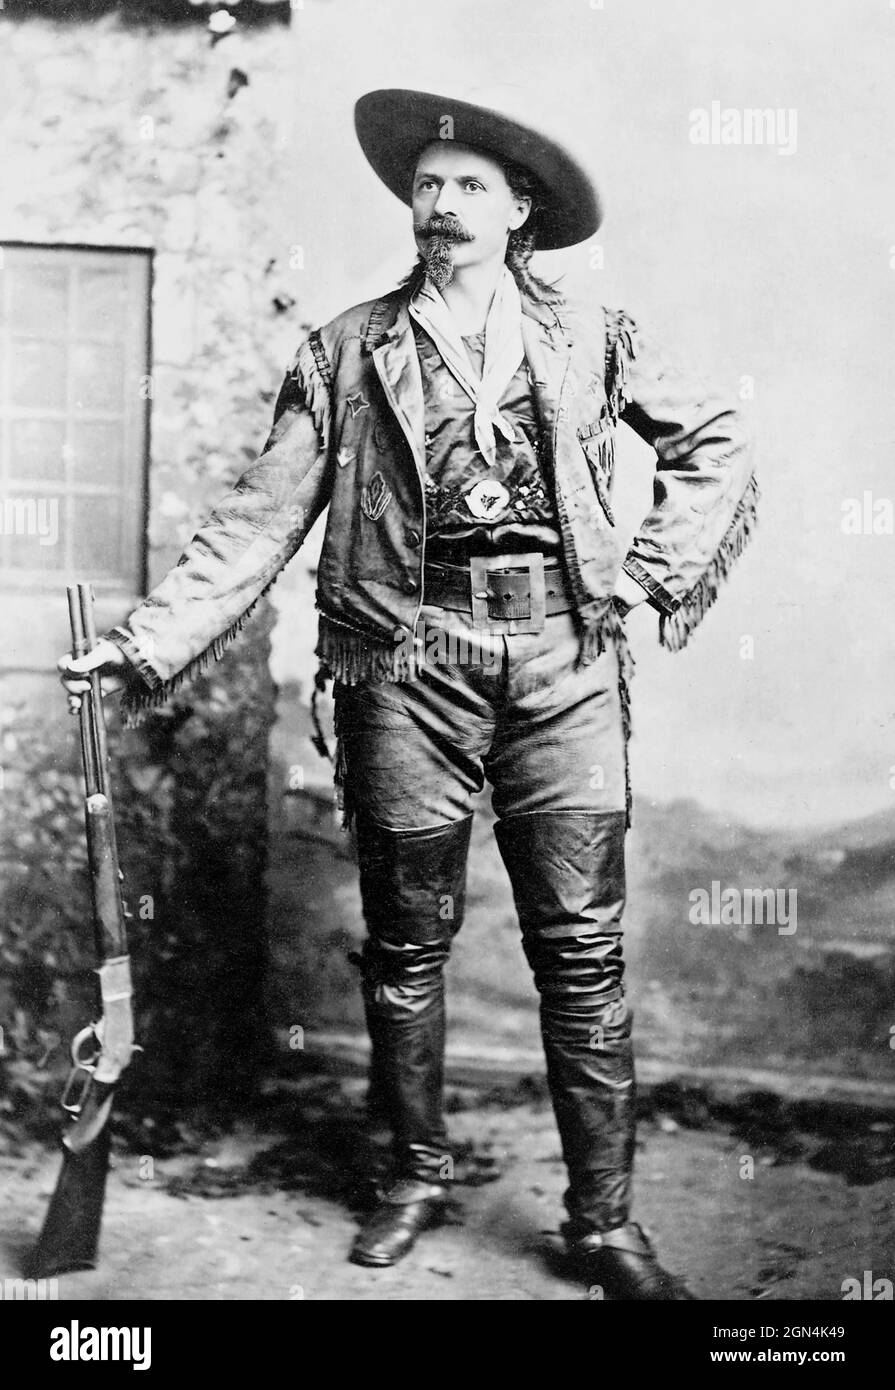 William Frederick 'Buffalo Bill' Cody (1846-1917), chasseur de bisons, scout et showman. Photo c.1890 Banque D'Images